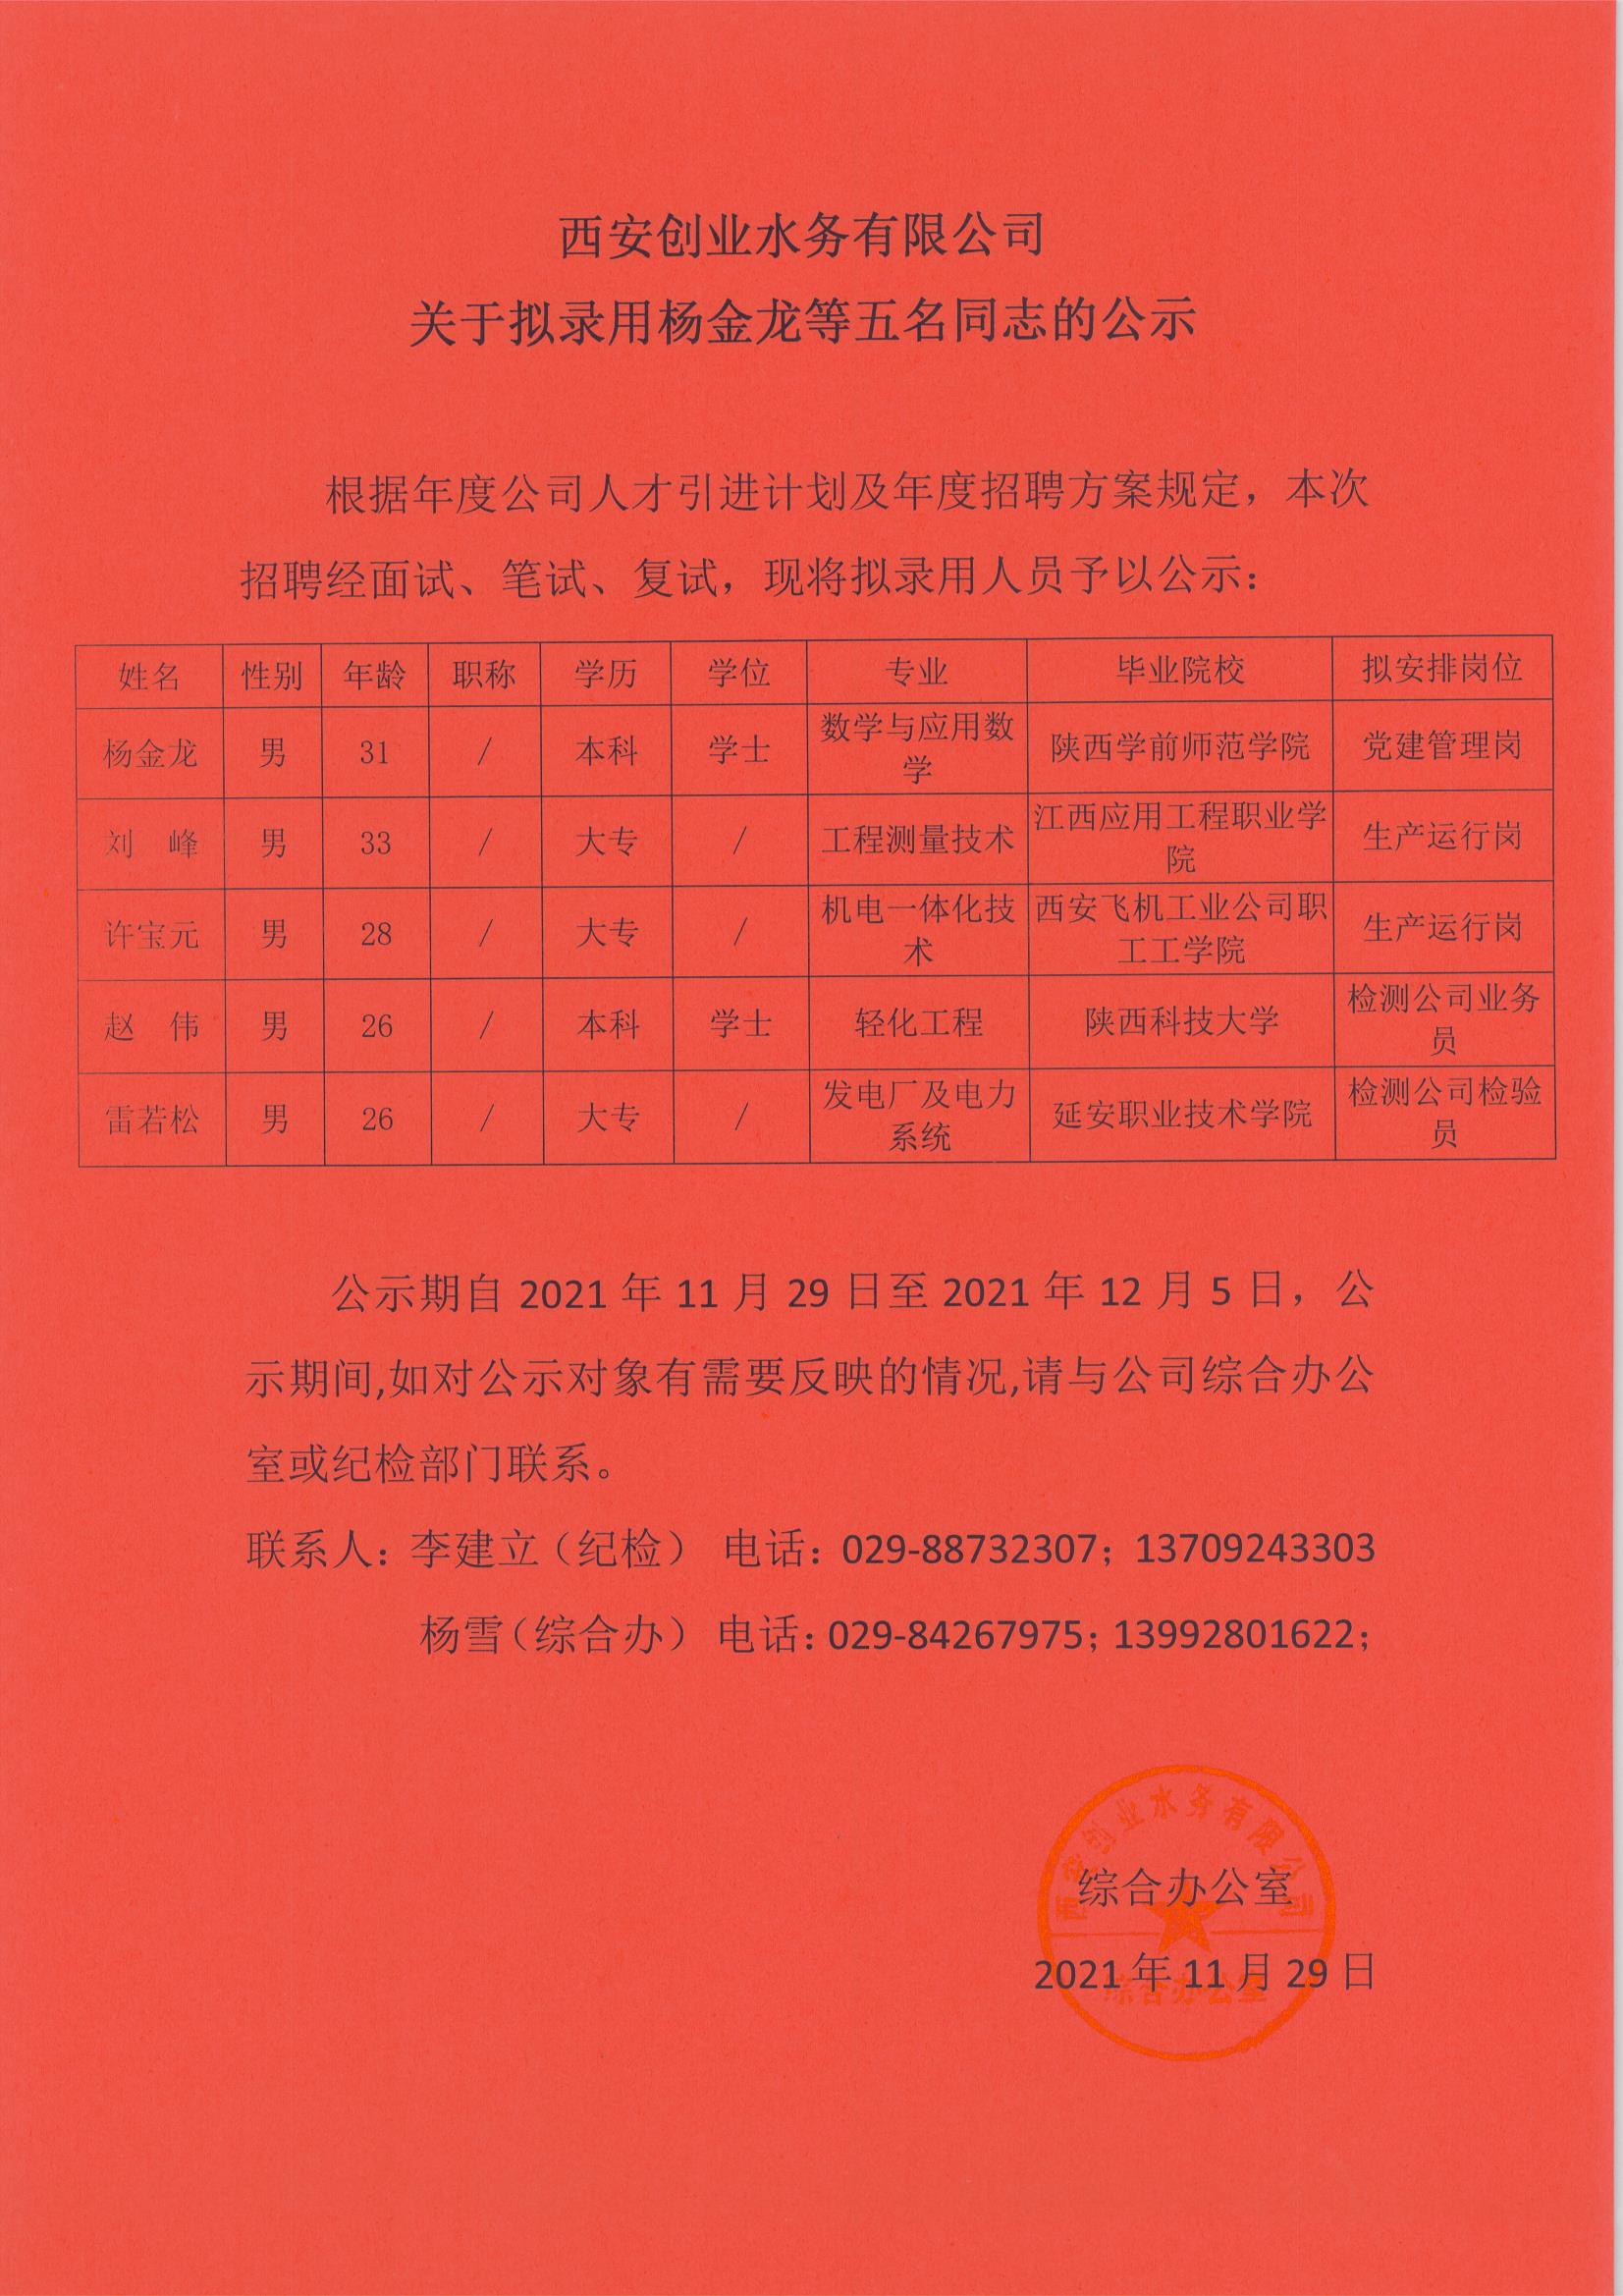 西安创业水务有限公司关于拟录用杨金龙等五名同志的公示